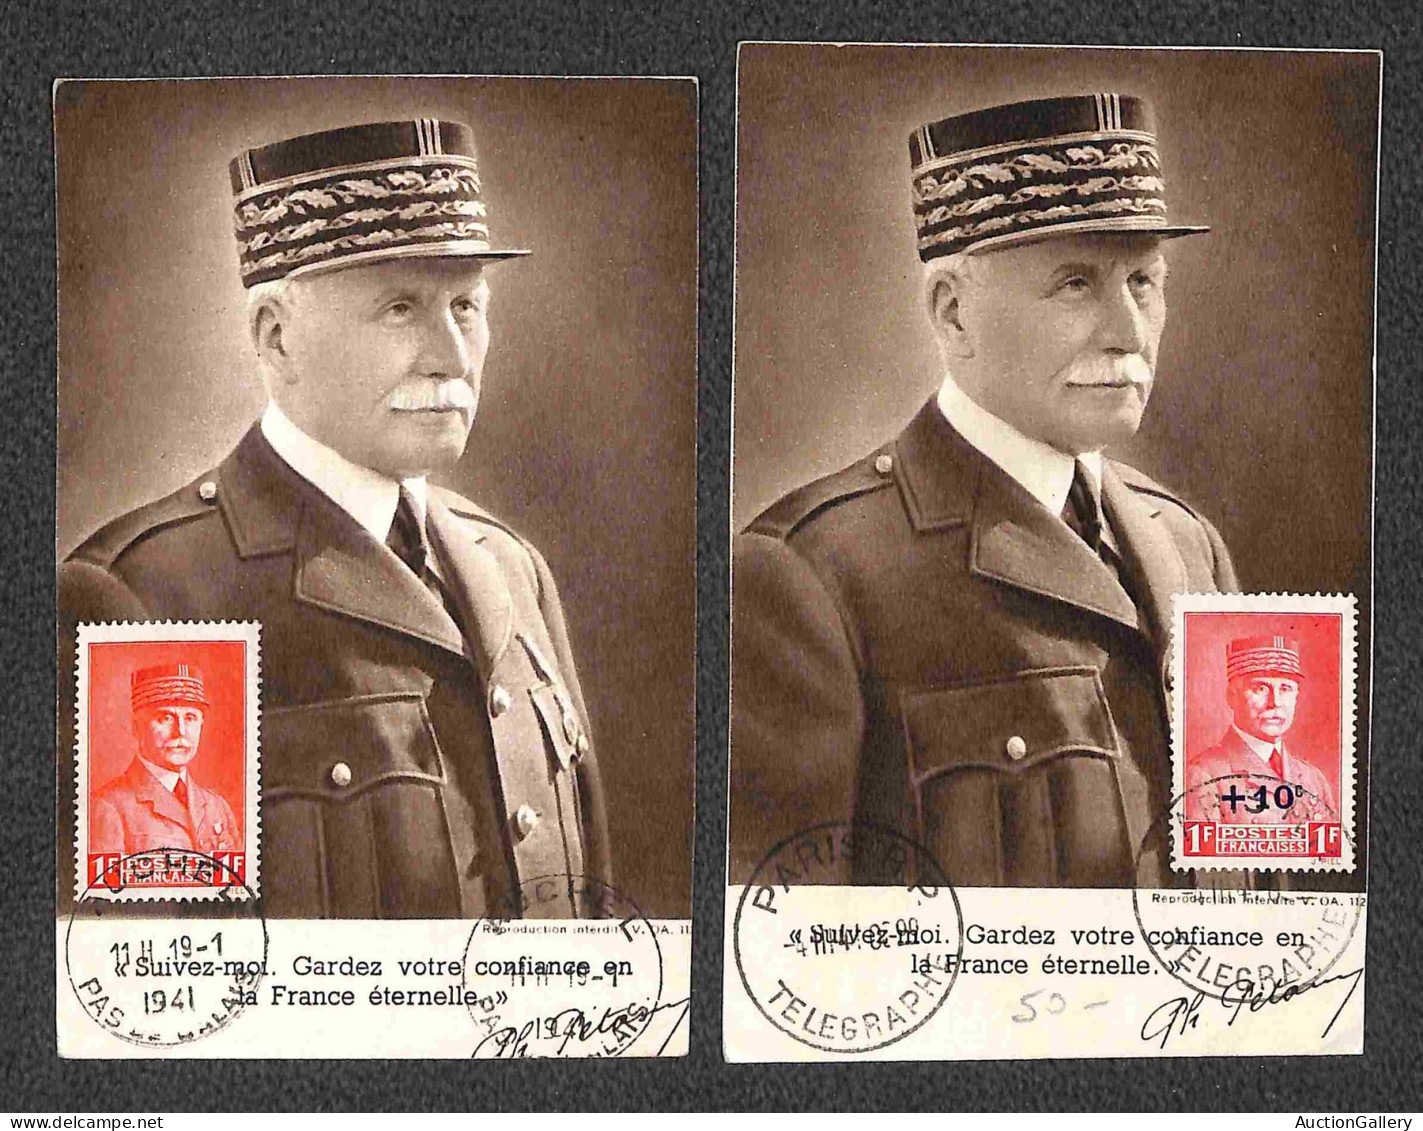 Europa - Francia - 1941 - Tredici cartoline con affrancature del periodo (anche Maximum e con annulli speciali)